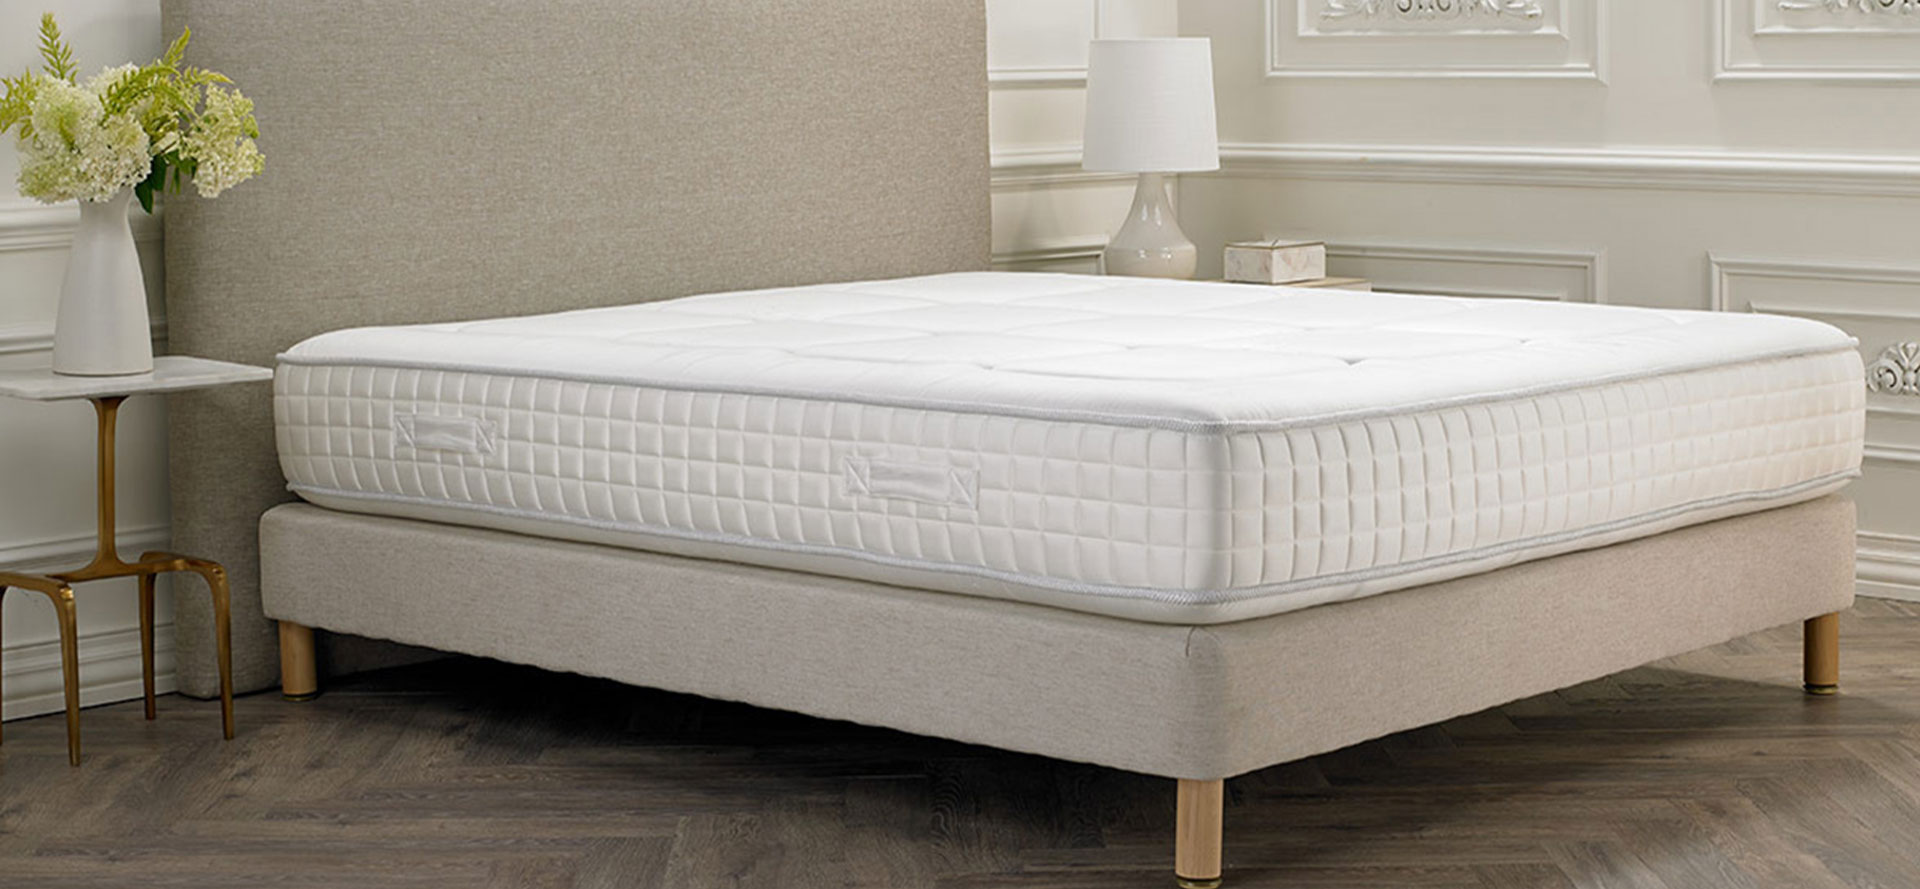 Awesome mattress for Fibromyalgia.